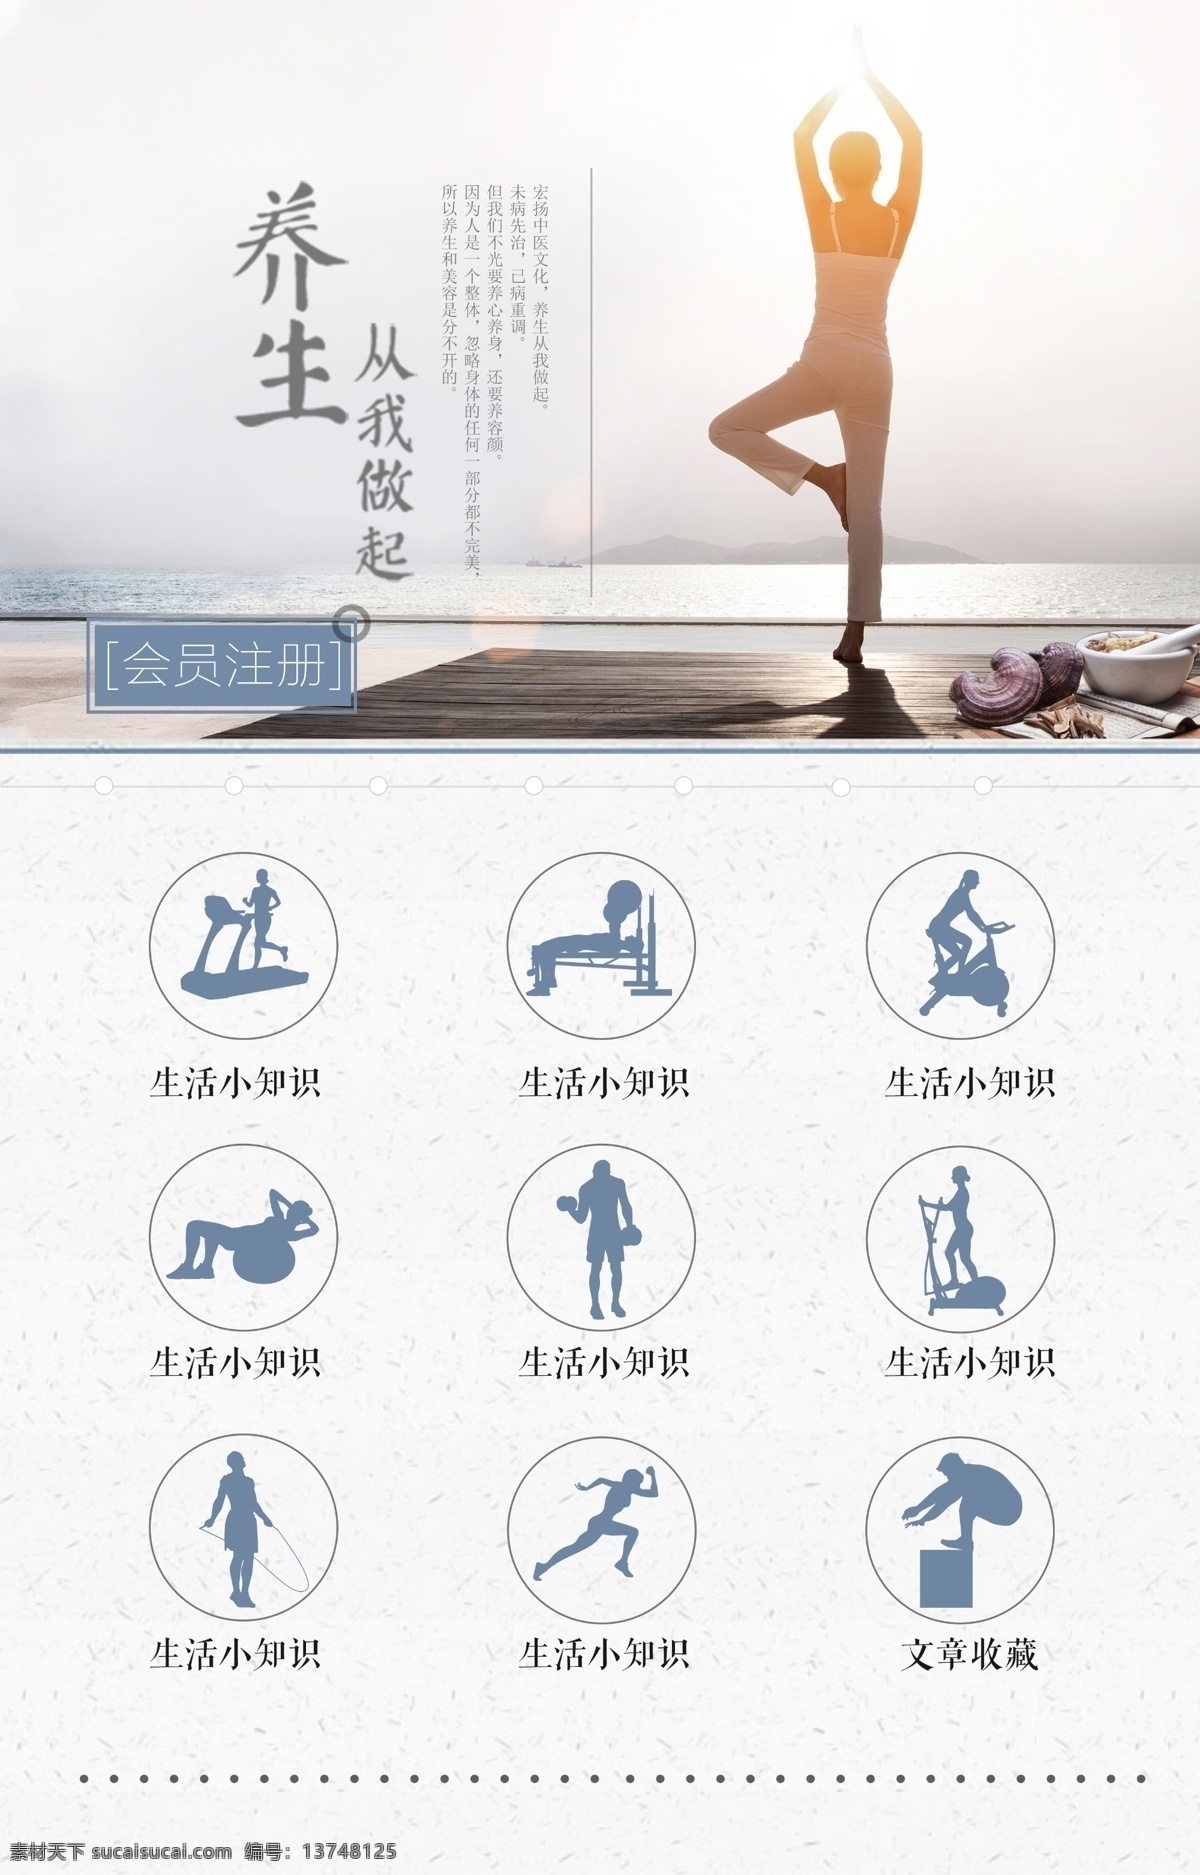 养生 会员注册 瑜伽 生活小知识 文章收藏 灵芝 锻炼 app引导页 注册页 h5